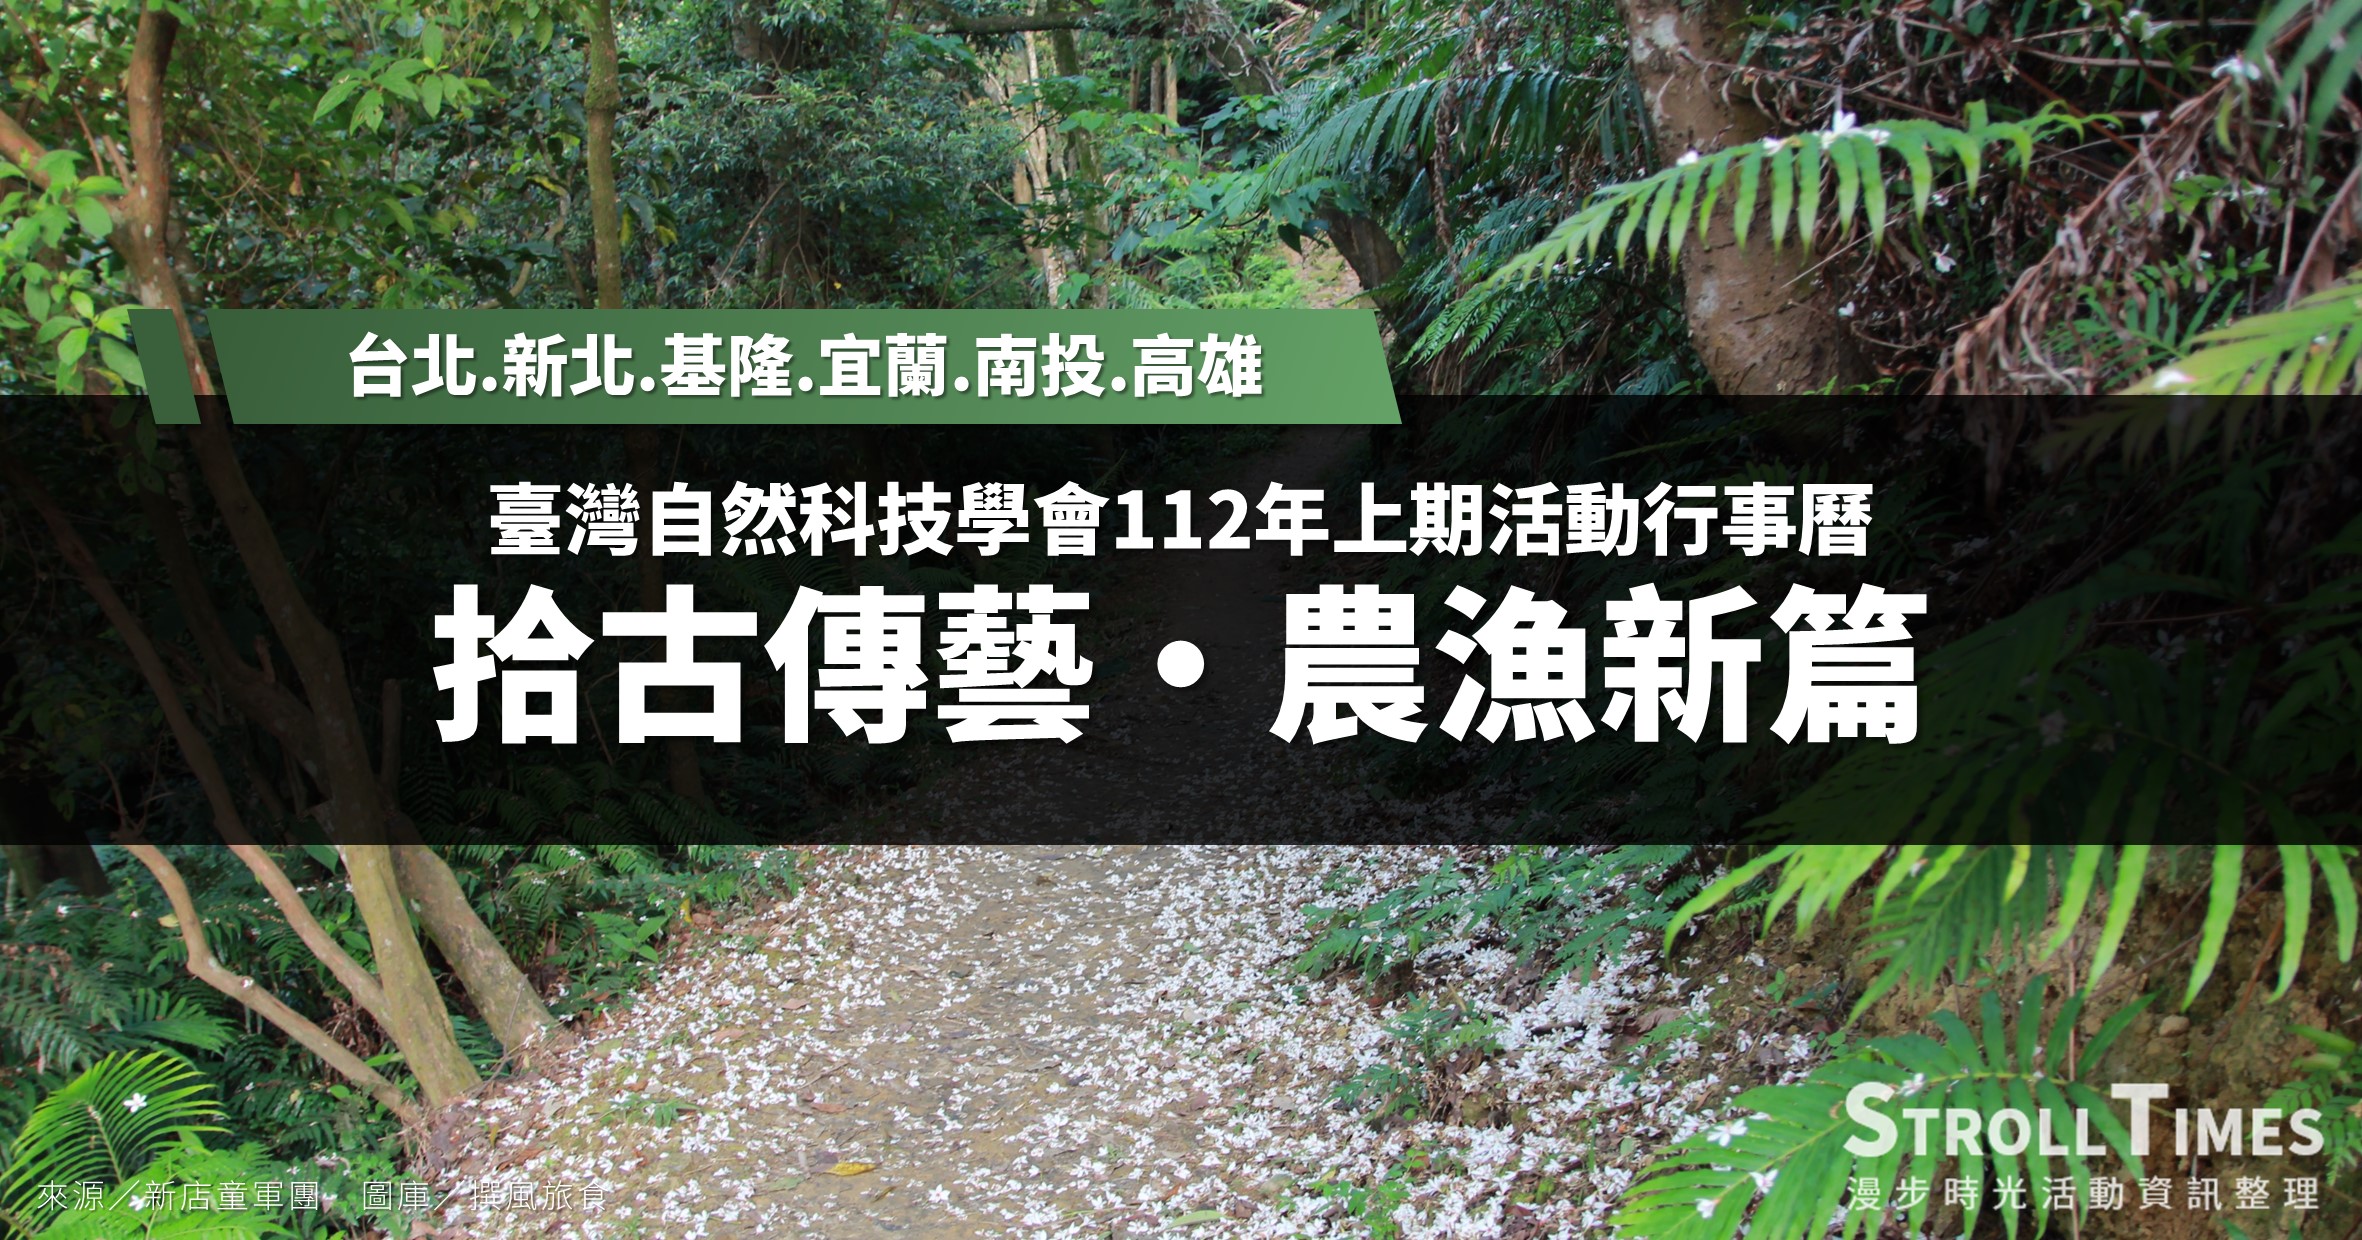 臺灣自然科技學會活動》112年上期活動行事曆